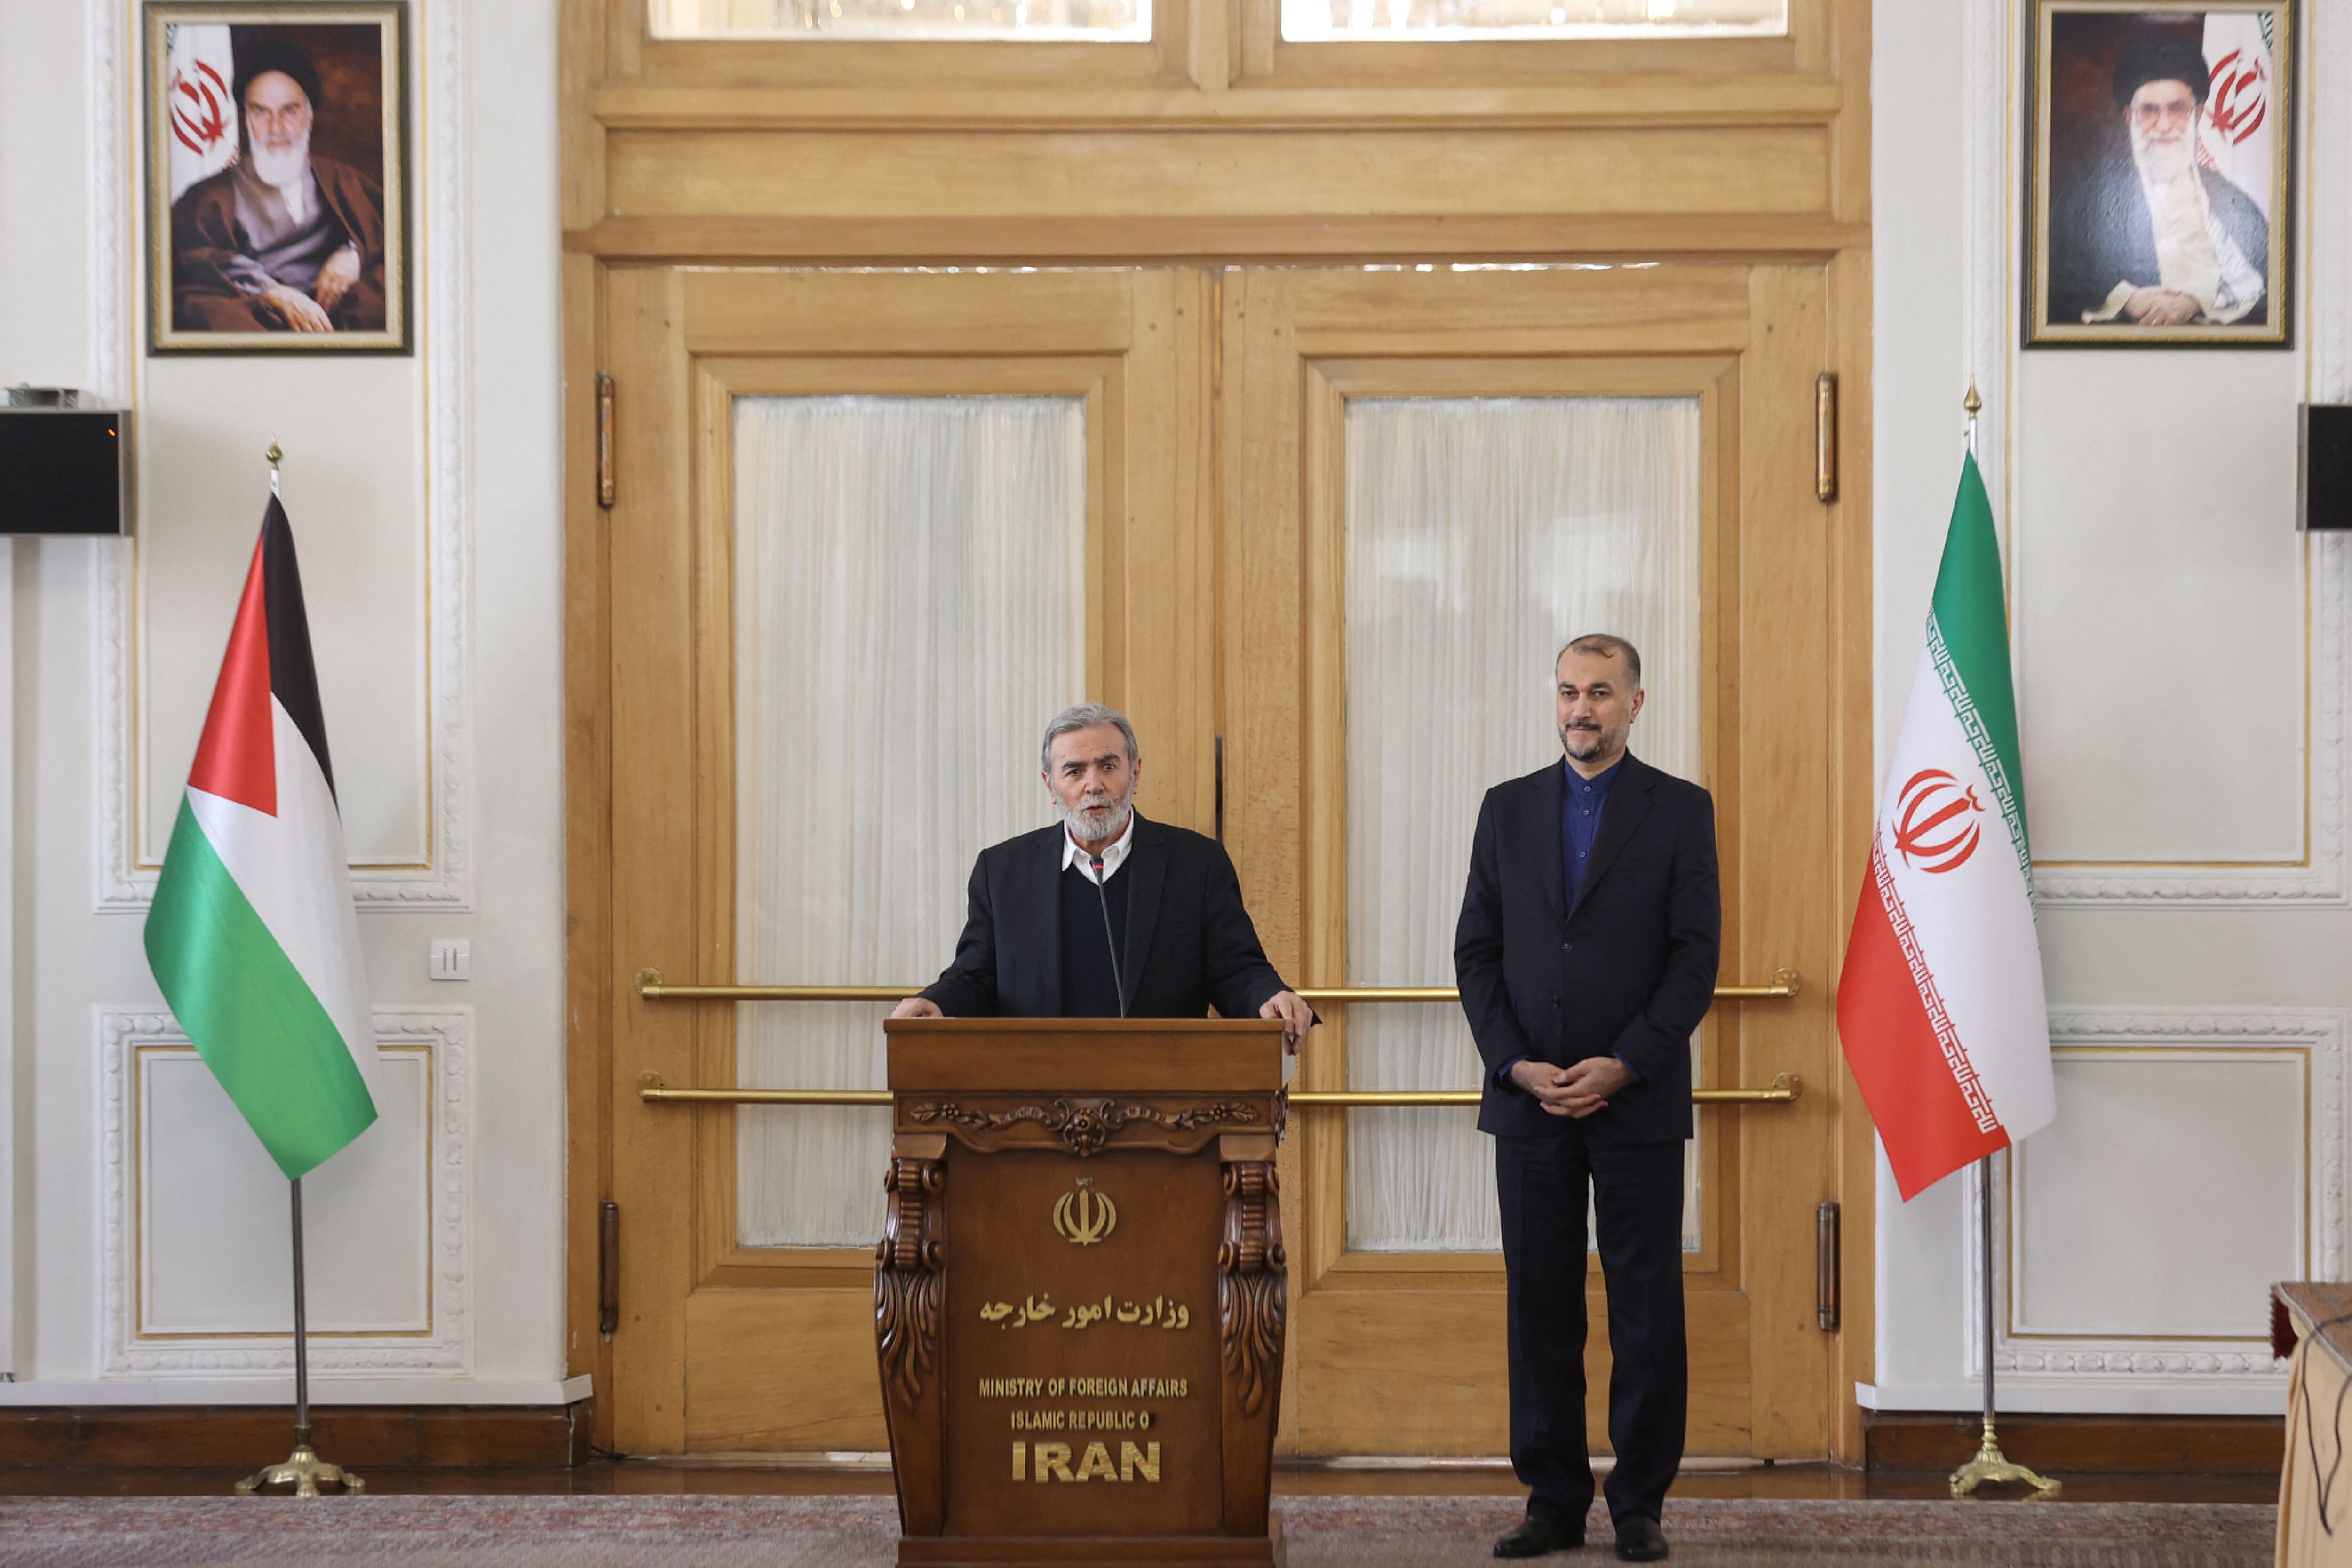 Los nexos terroristas del régimen de Irán: en menos de una semana, su canciller se reunió con los jefes de Hamas y la Yihad Islámica